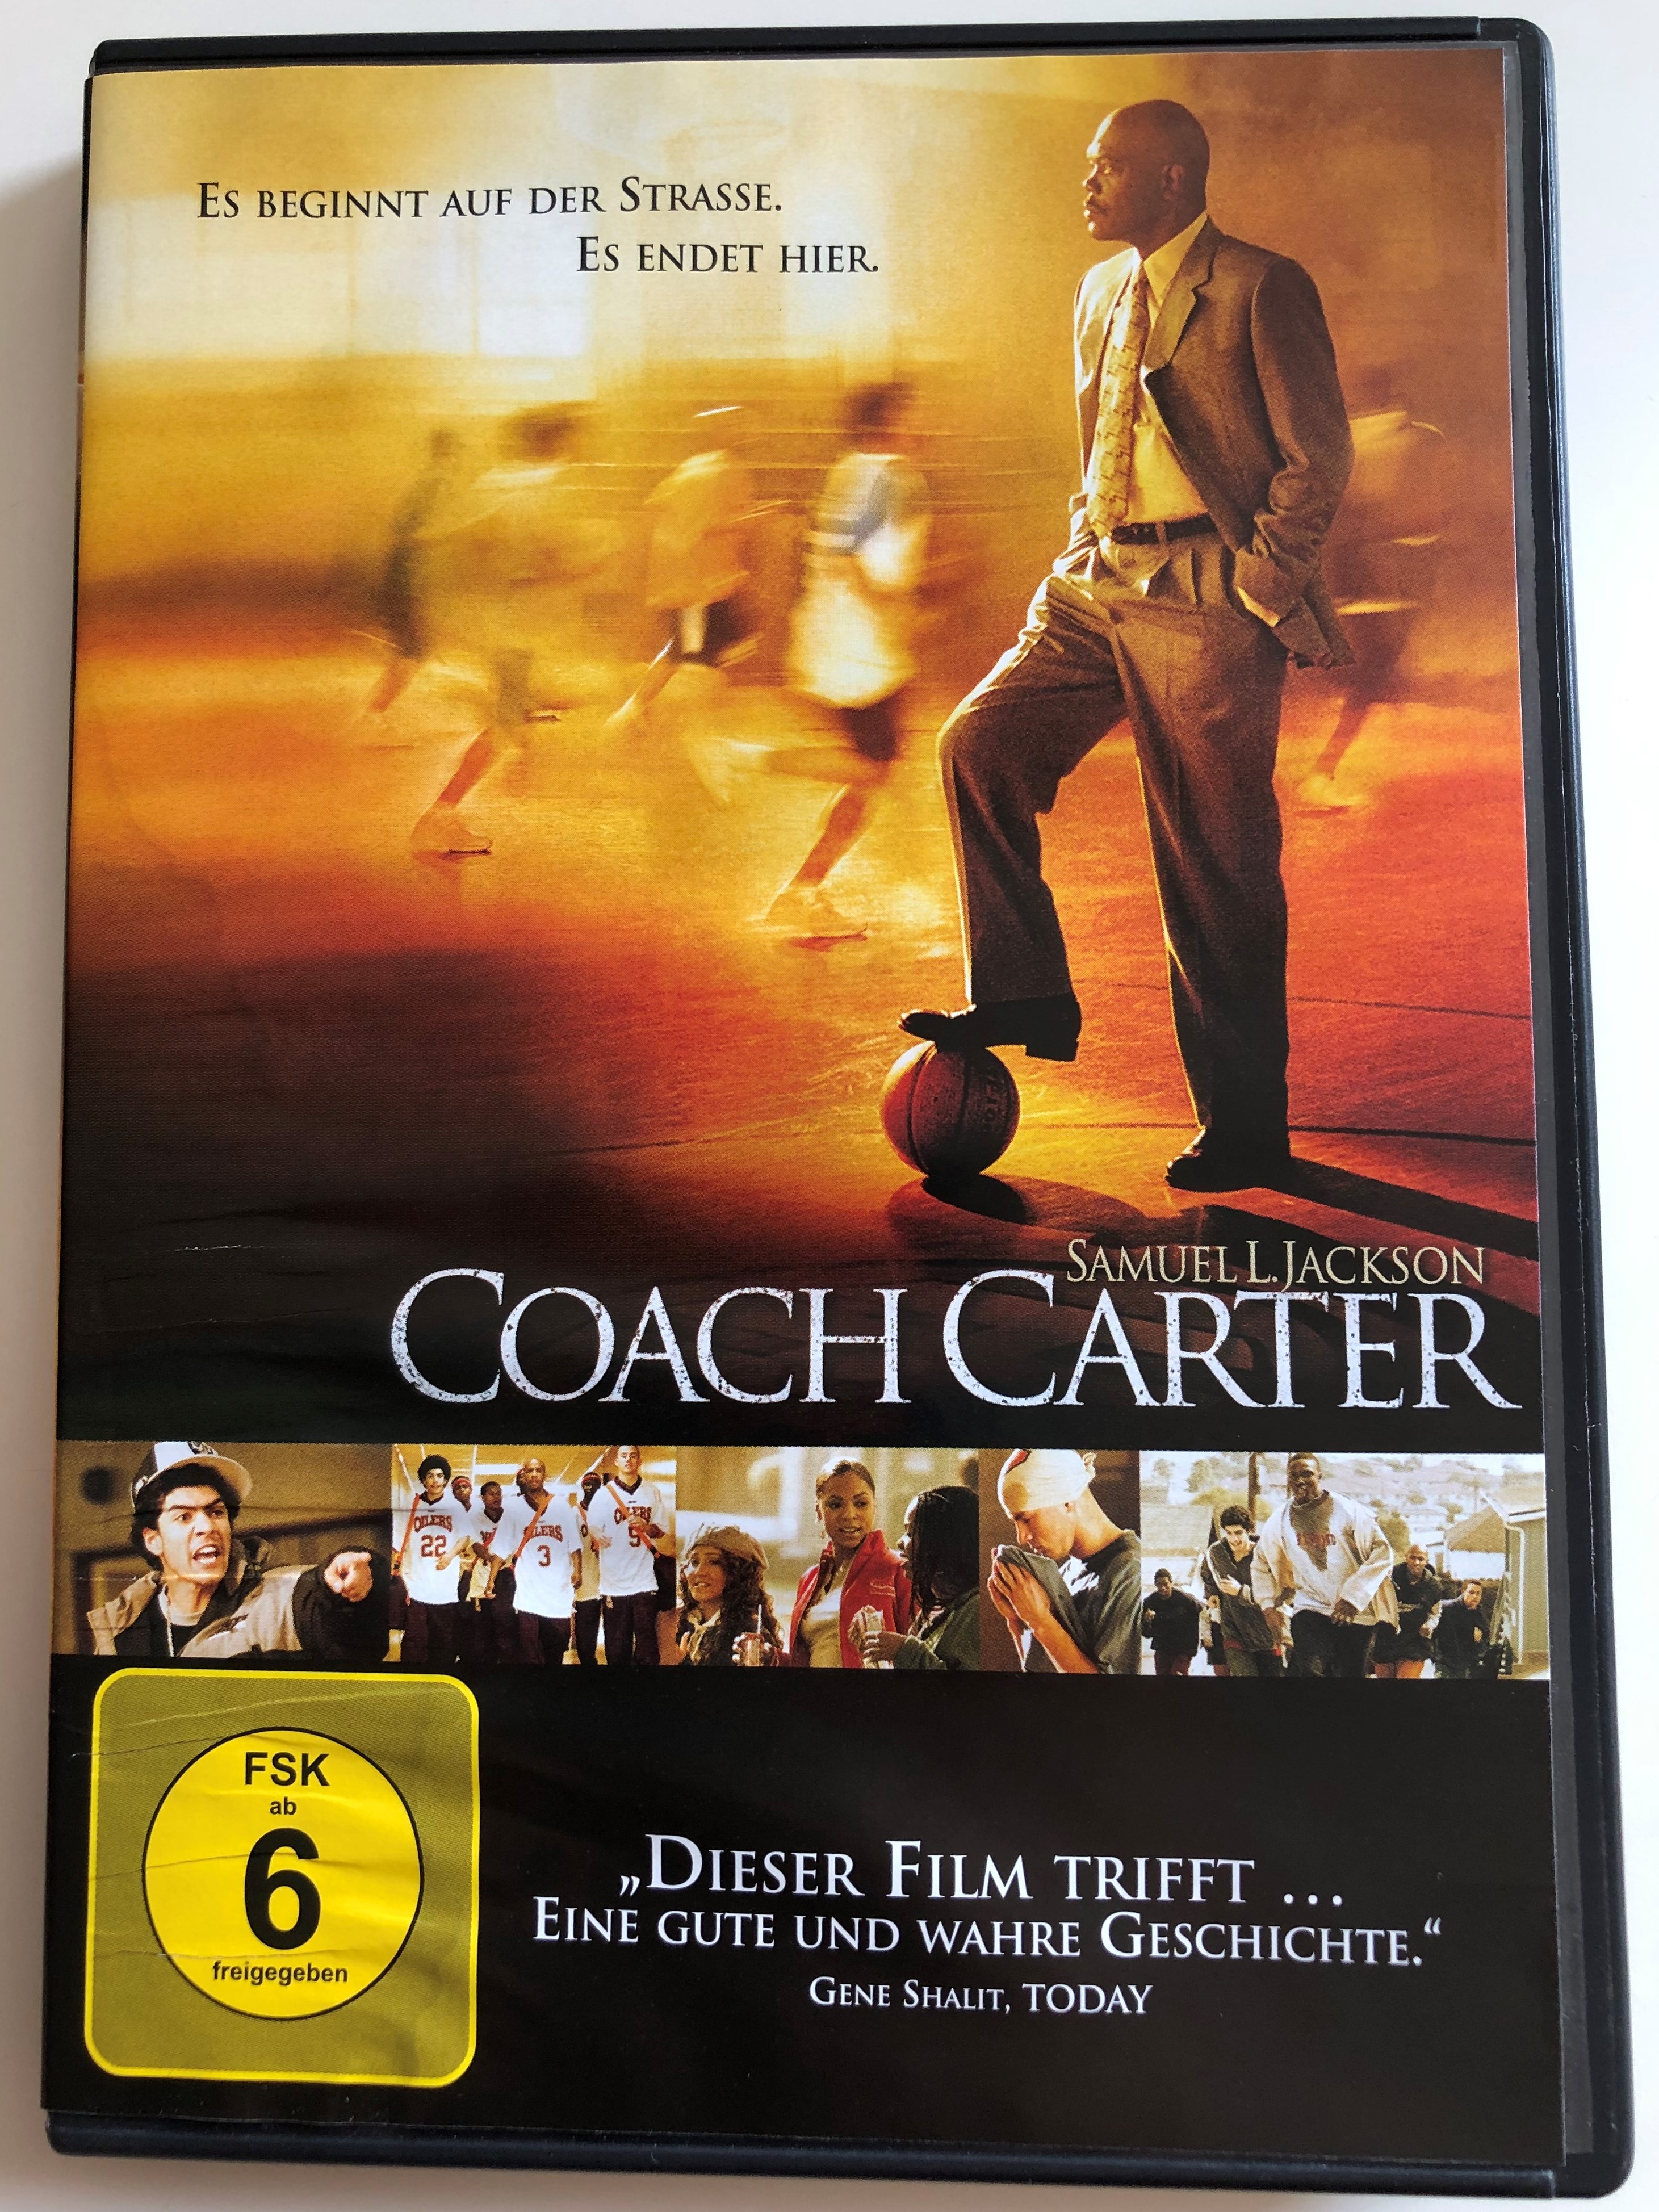 coach-carter-dvd-2005-es-beginnt-auf-der-strasse.-es-endet-hier-directed-by-thomas-carter-starring-samuel-l.-jackson-ashanti-rob-brown-channing-tatum-rick-gonzalez-1-.jpg